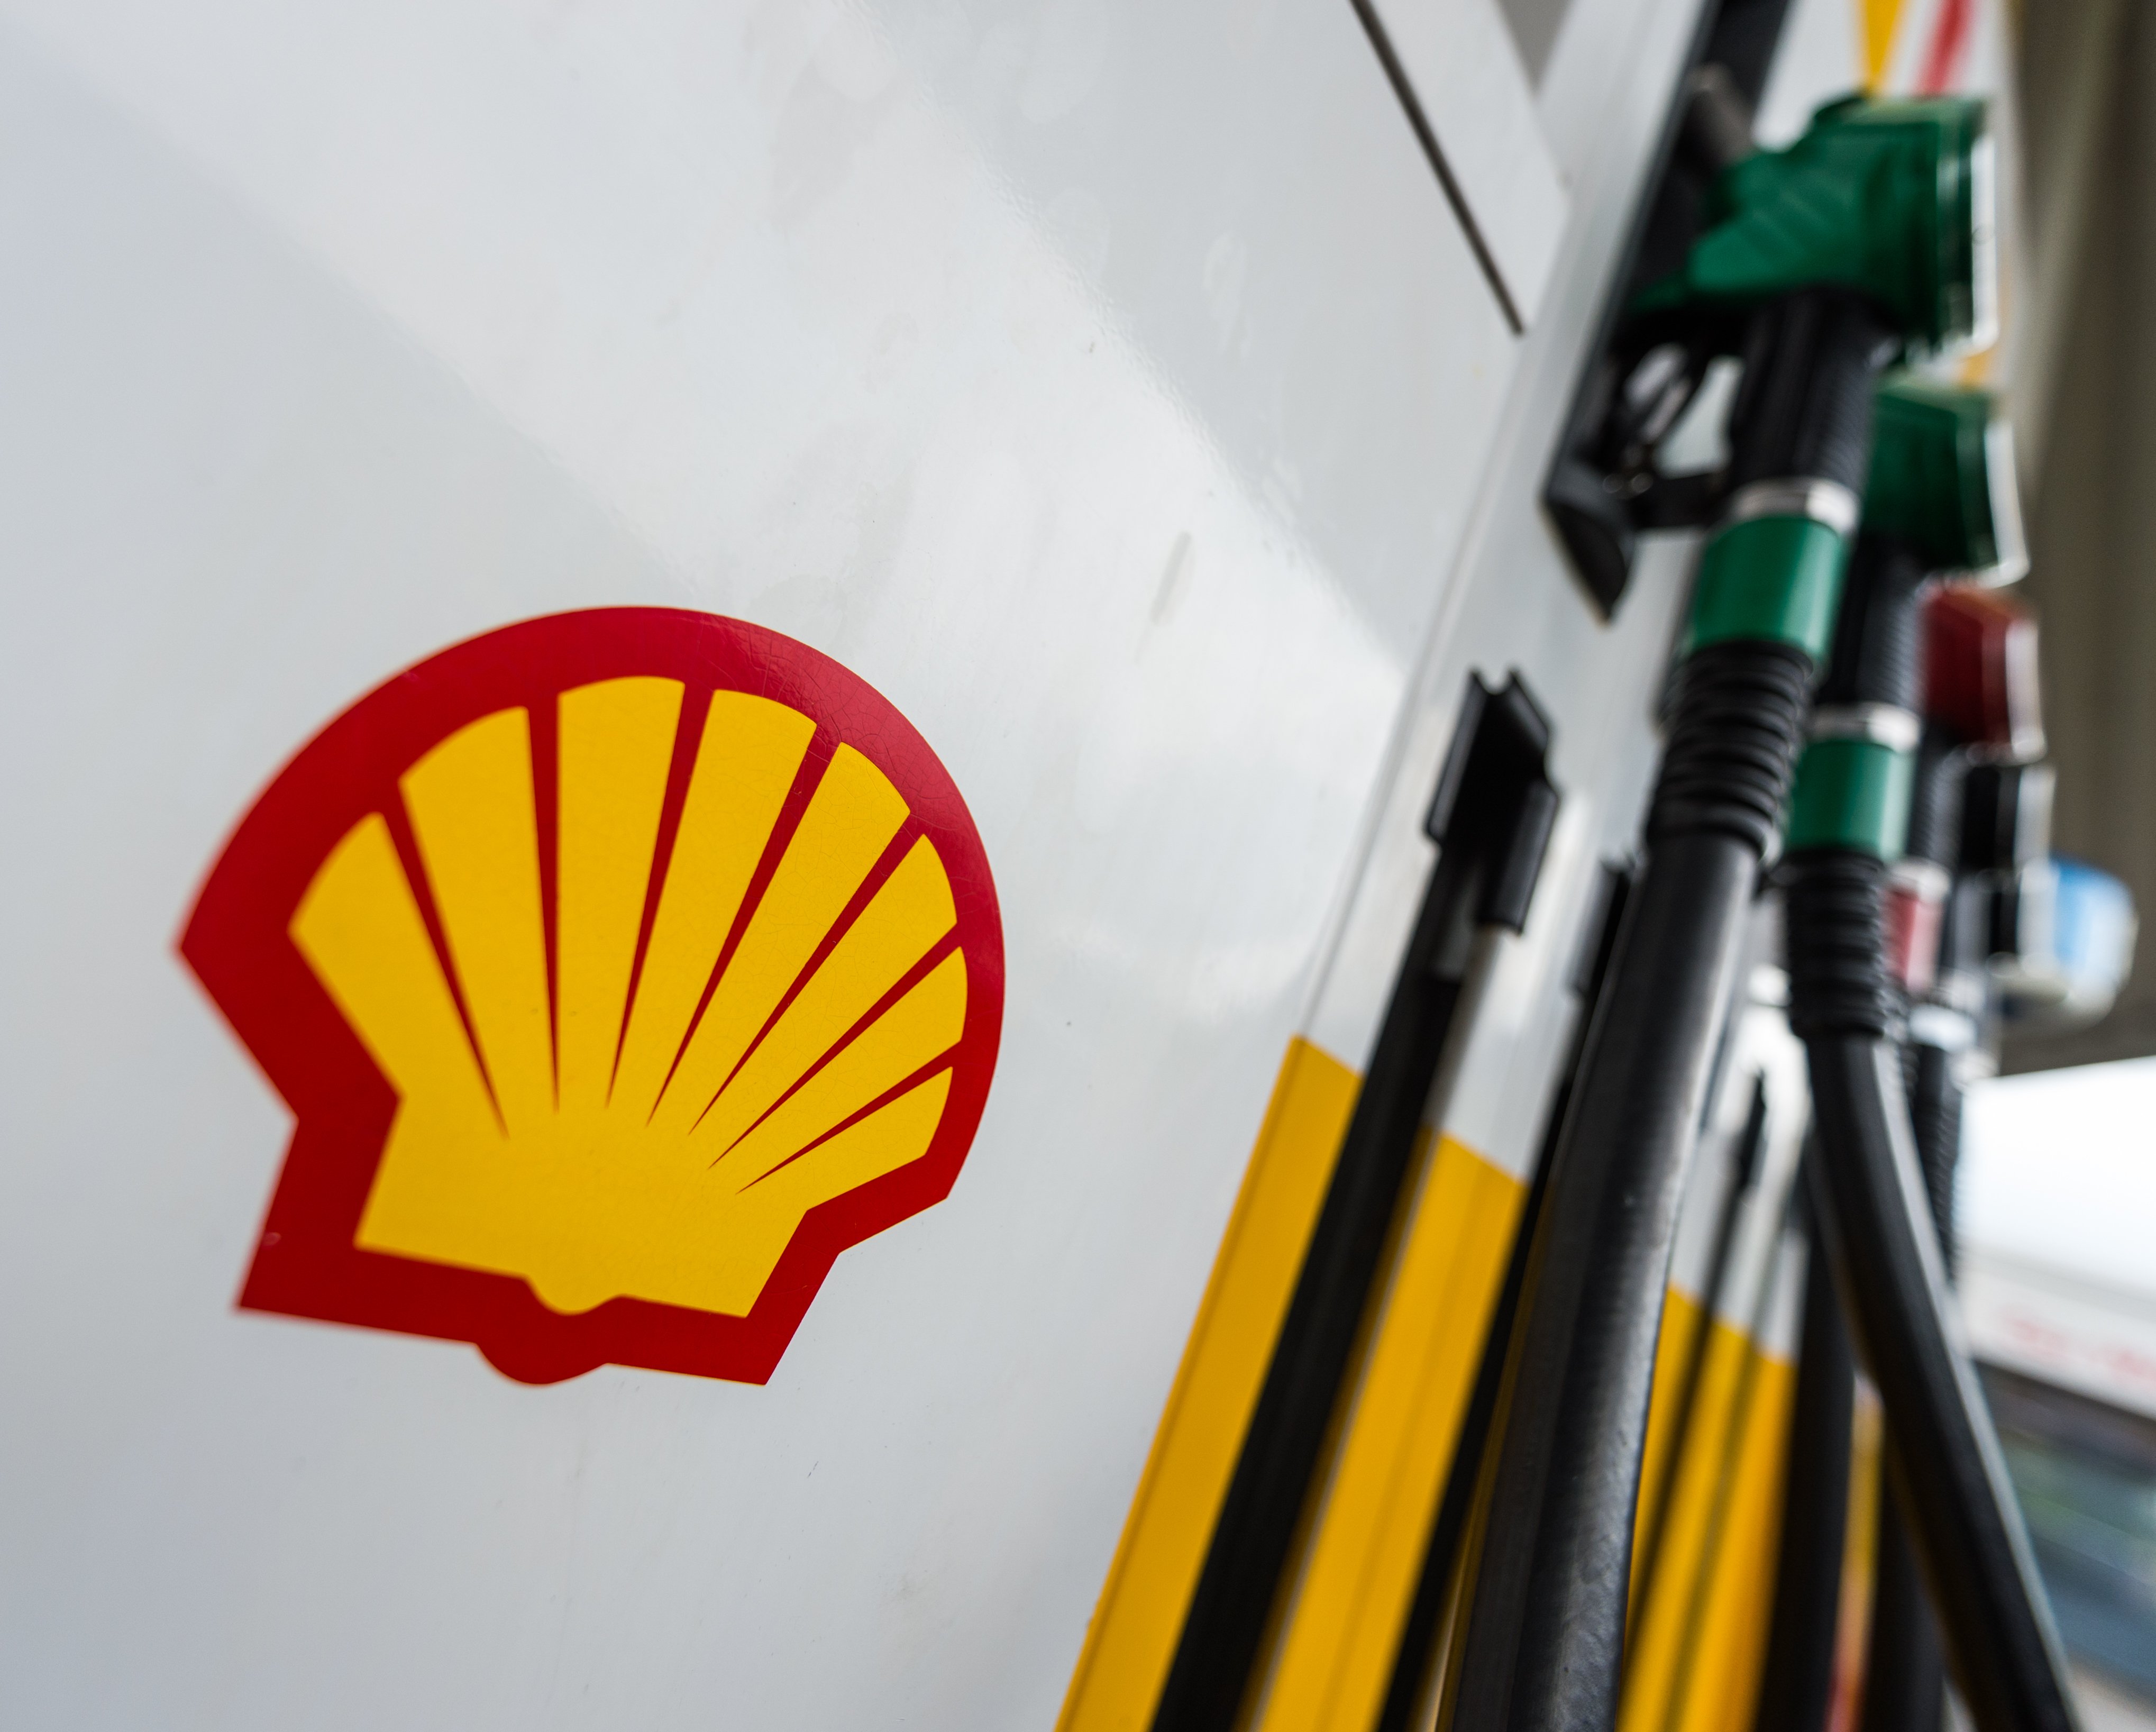 La petrolera Shell obtiene un beneficio de 40.000 millones, el mejor de su historia